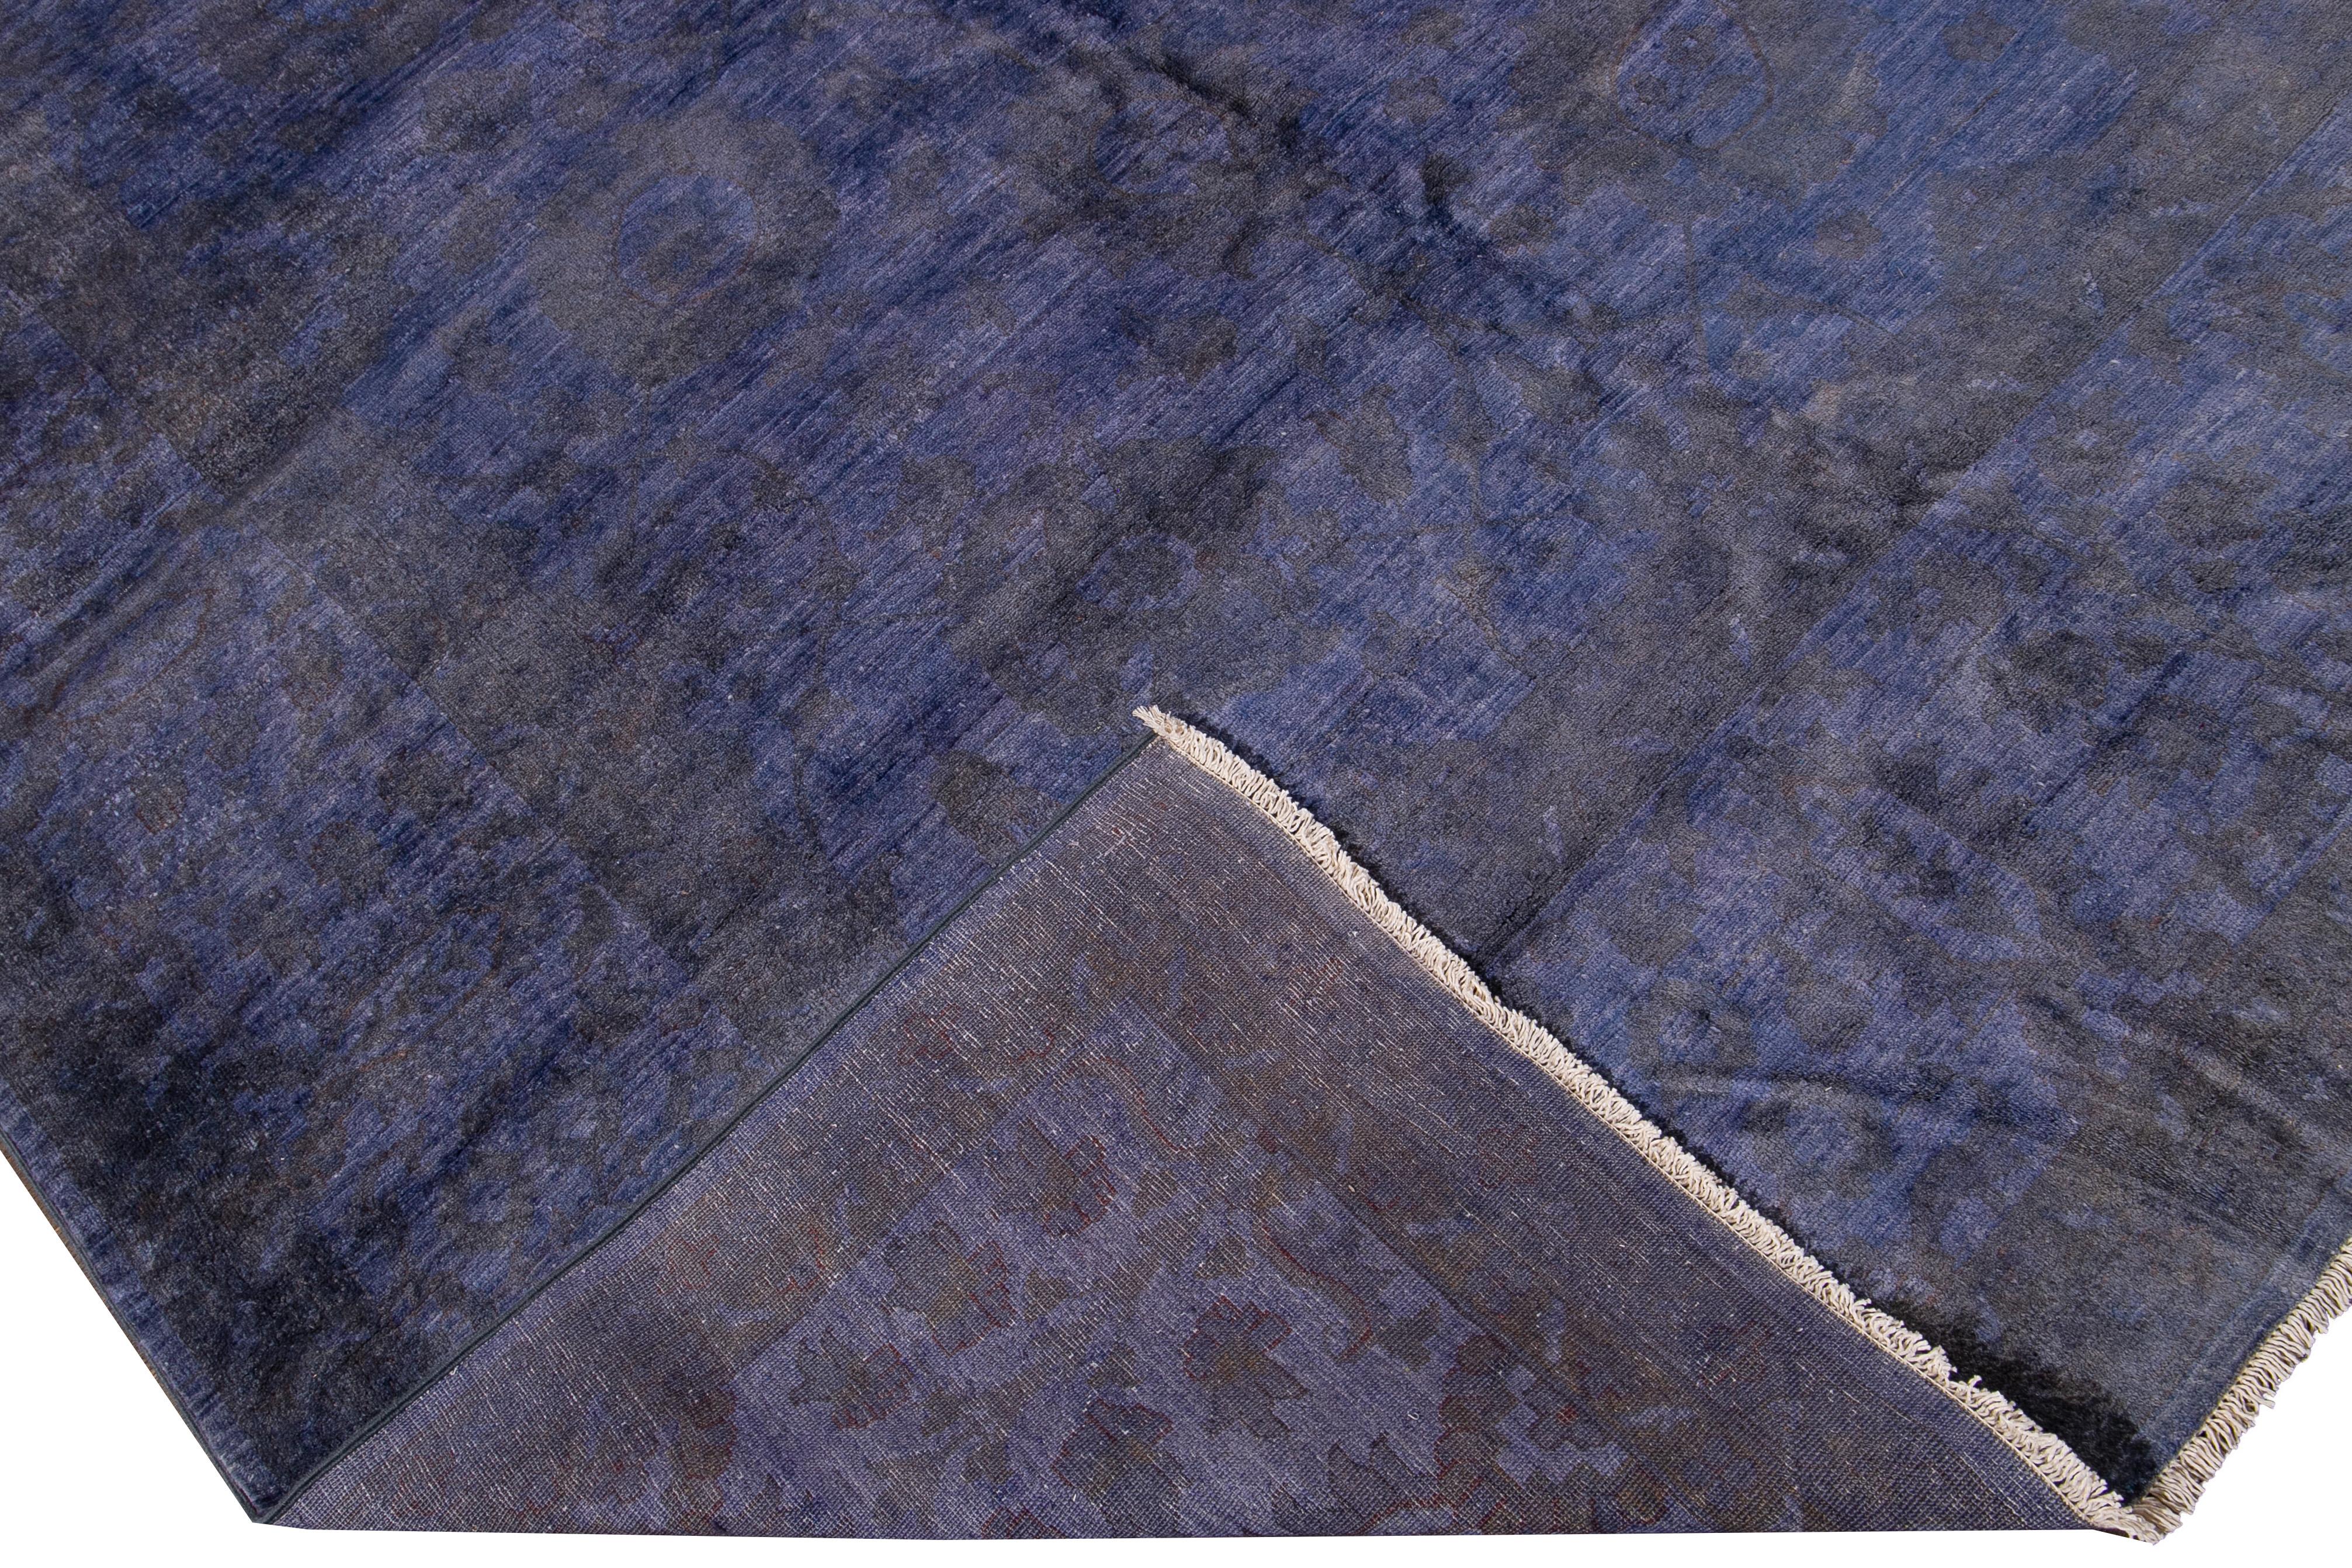 Schöner, moderner, handgeknüpfter, übergroßer Teppich aus gefärbter Wolle mit einem lila Feld. Dieser überfärbte Teppich hat einen grauen und beigen Akzent in einem floralen Allover-Muster.

Dieser Teppich misst: 12'10' x 16'2